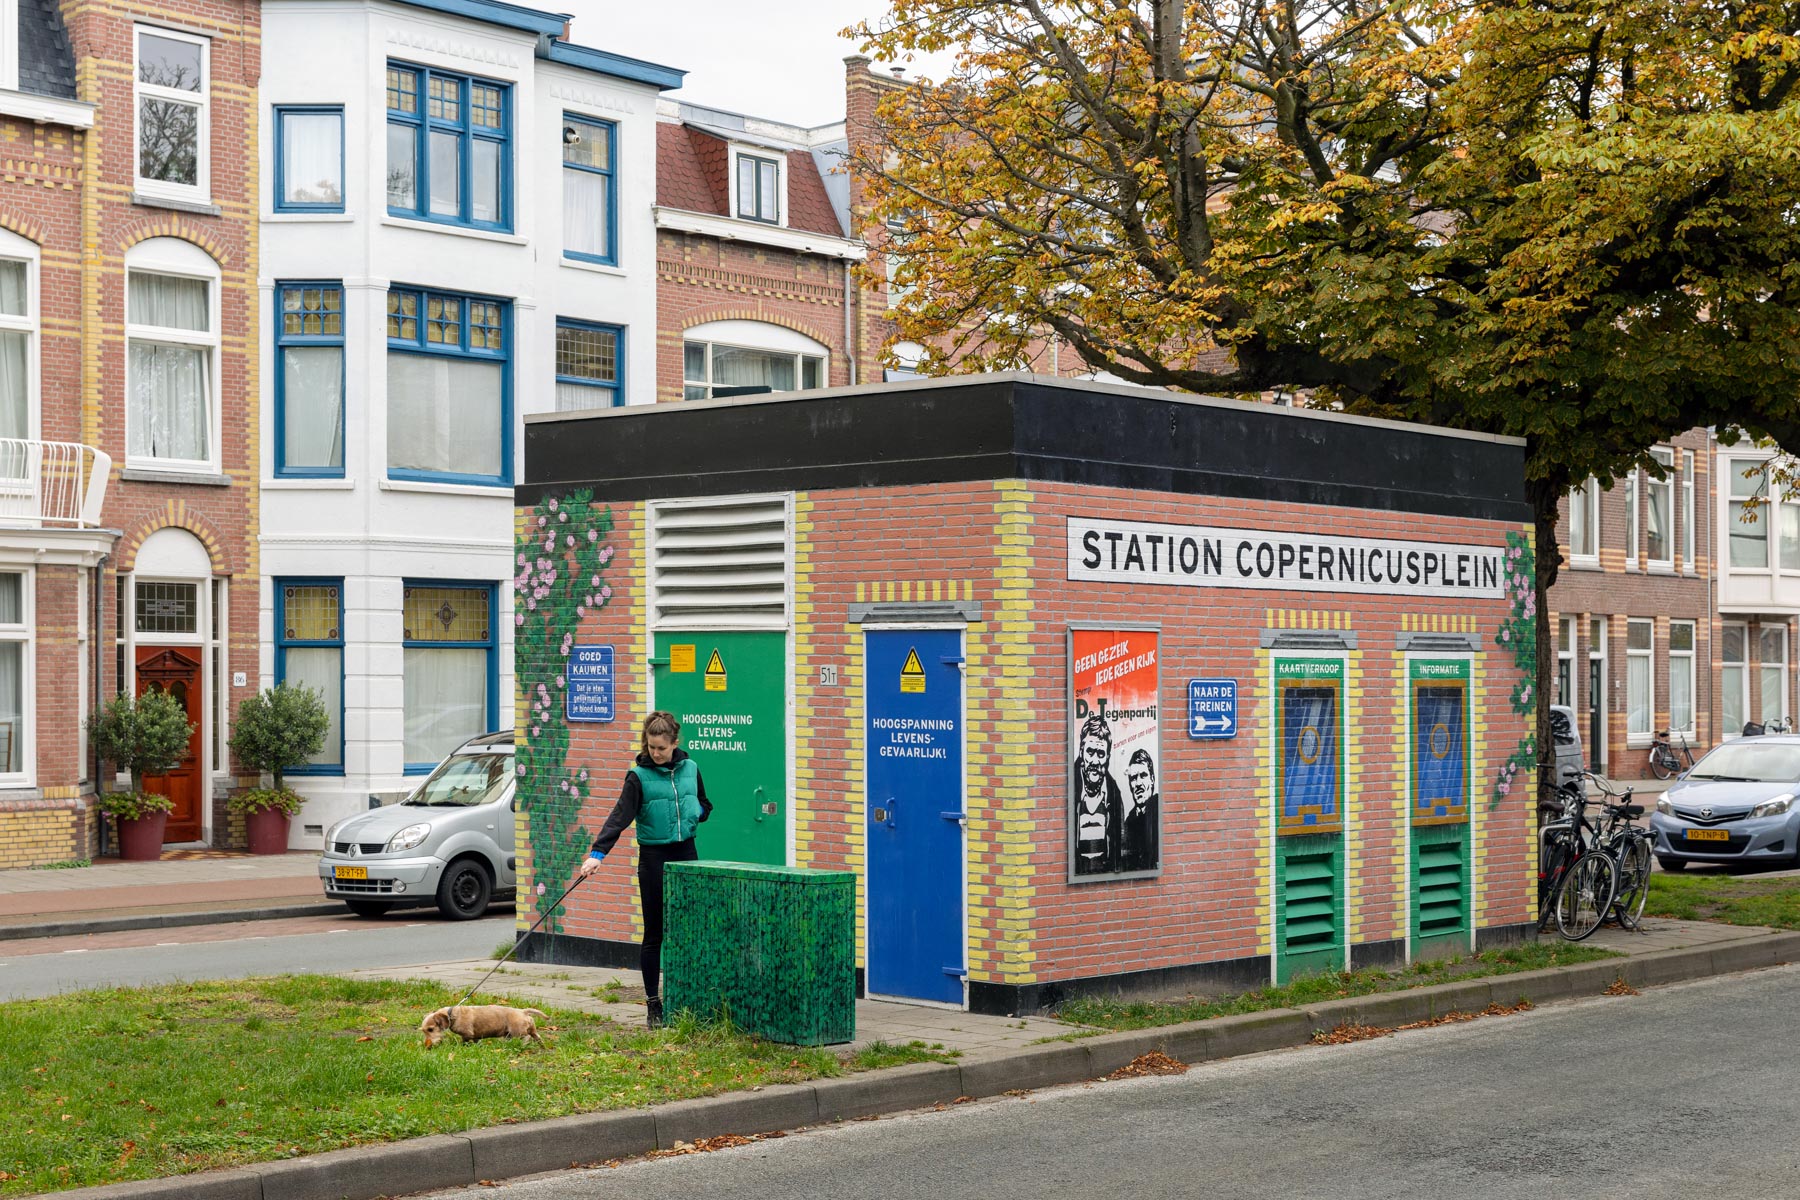 station copernicusplein street art